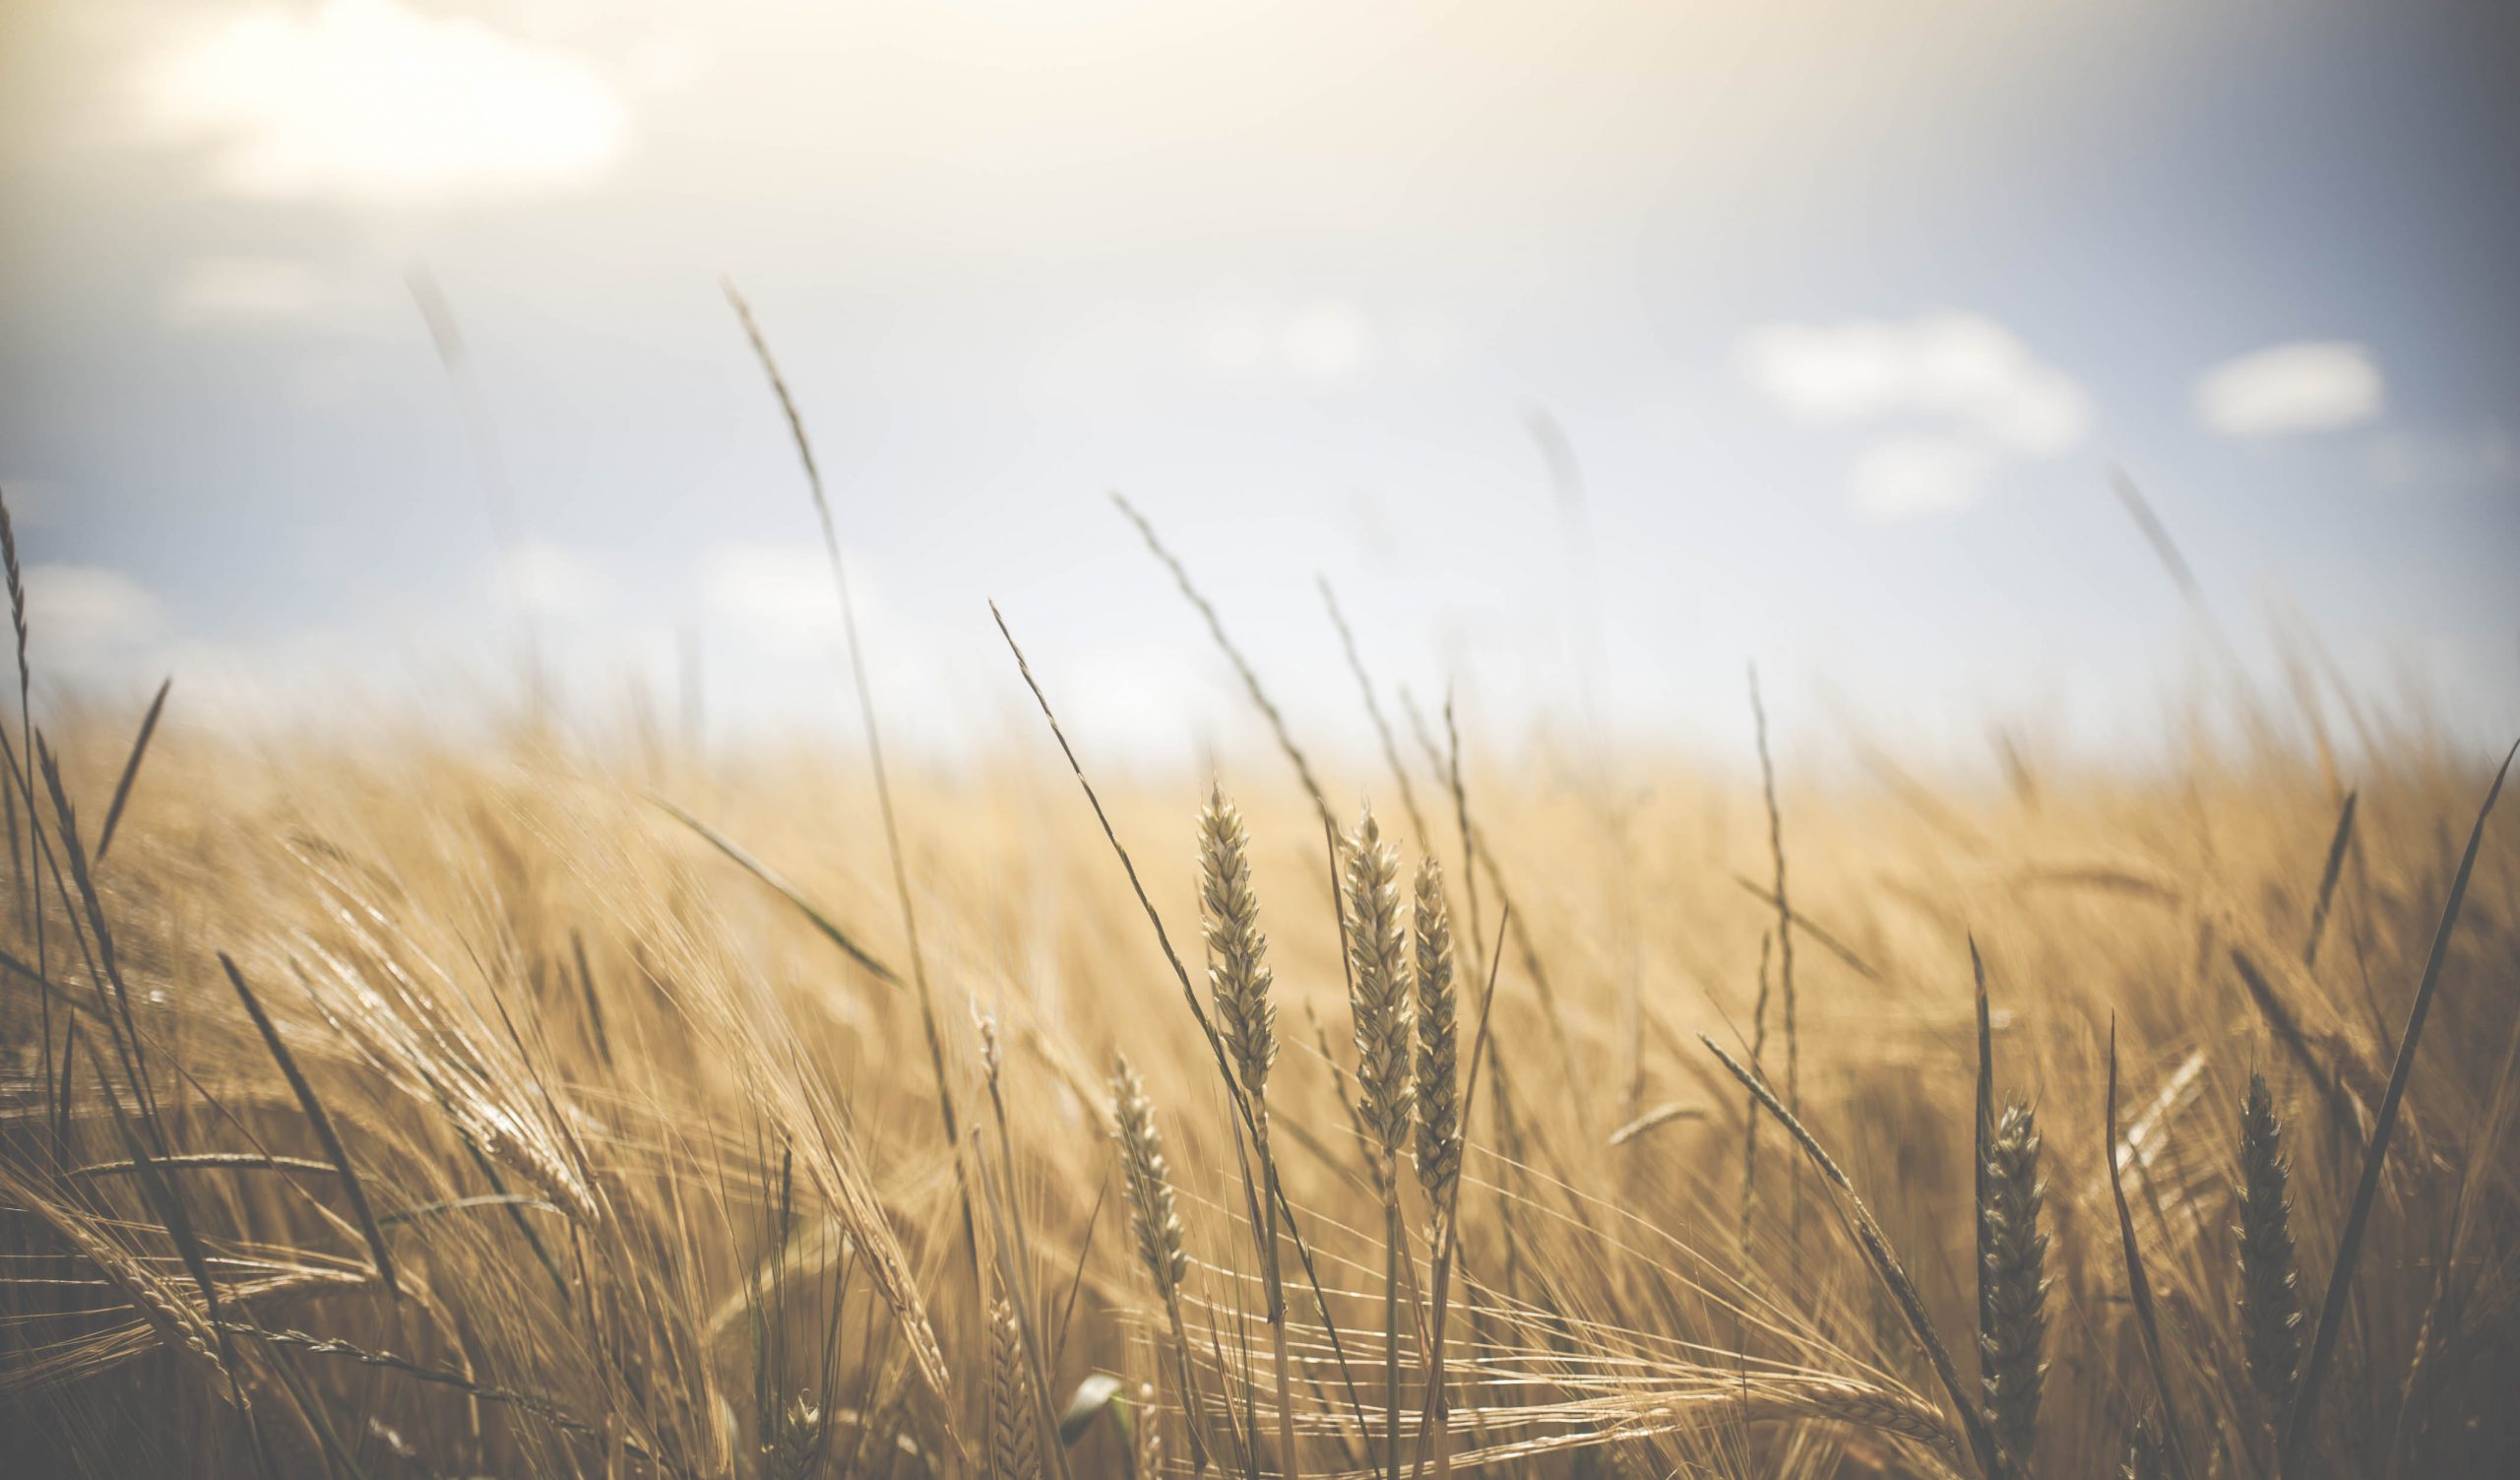 Barley/Wheat Field under the Sun